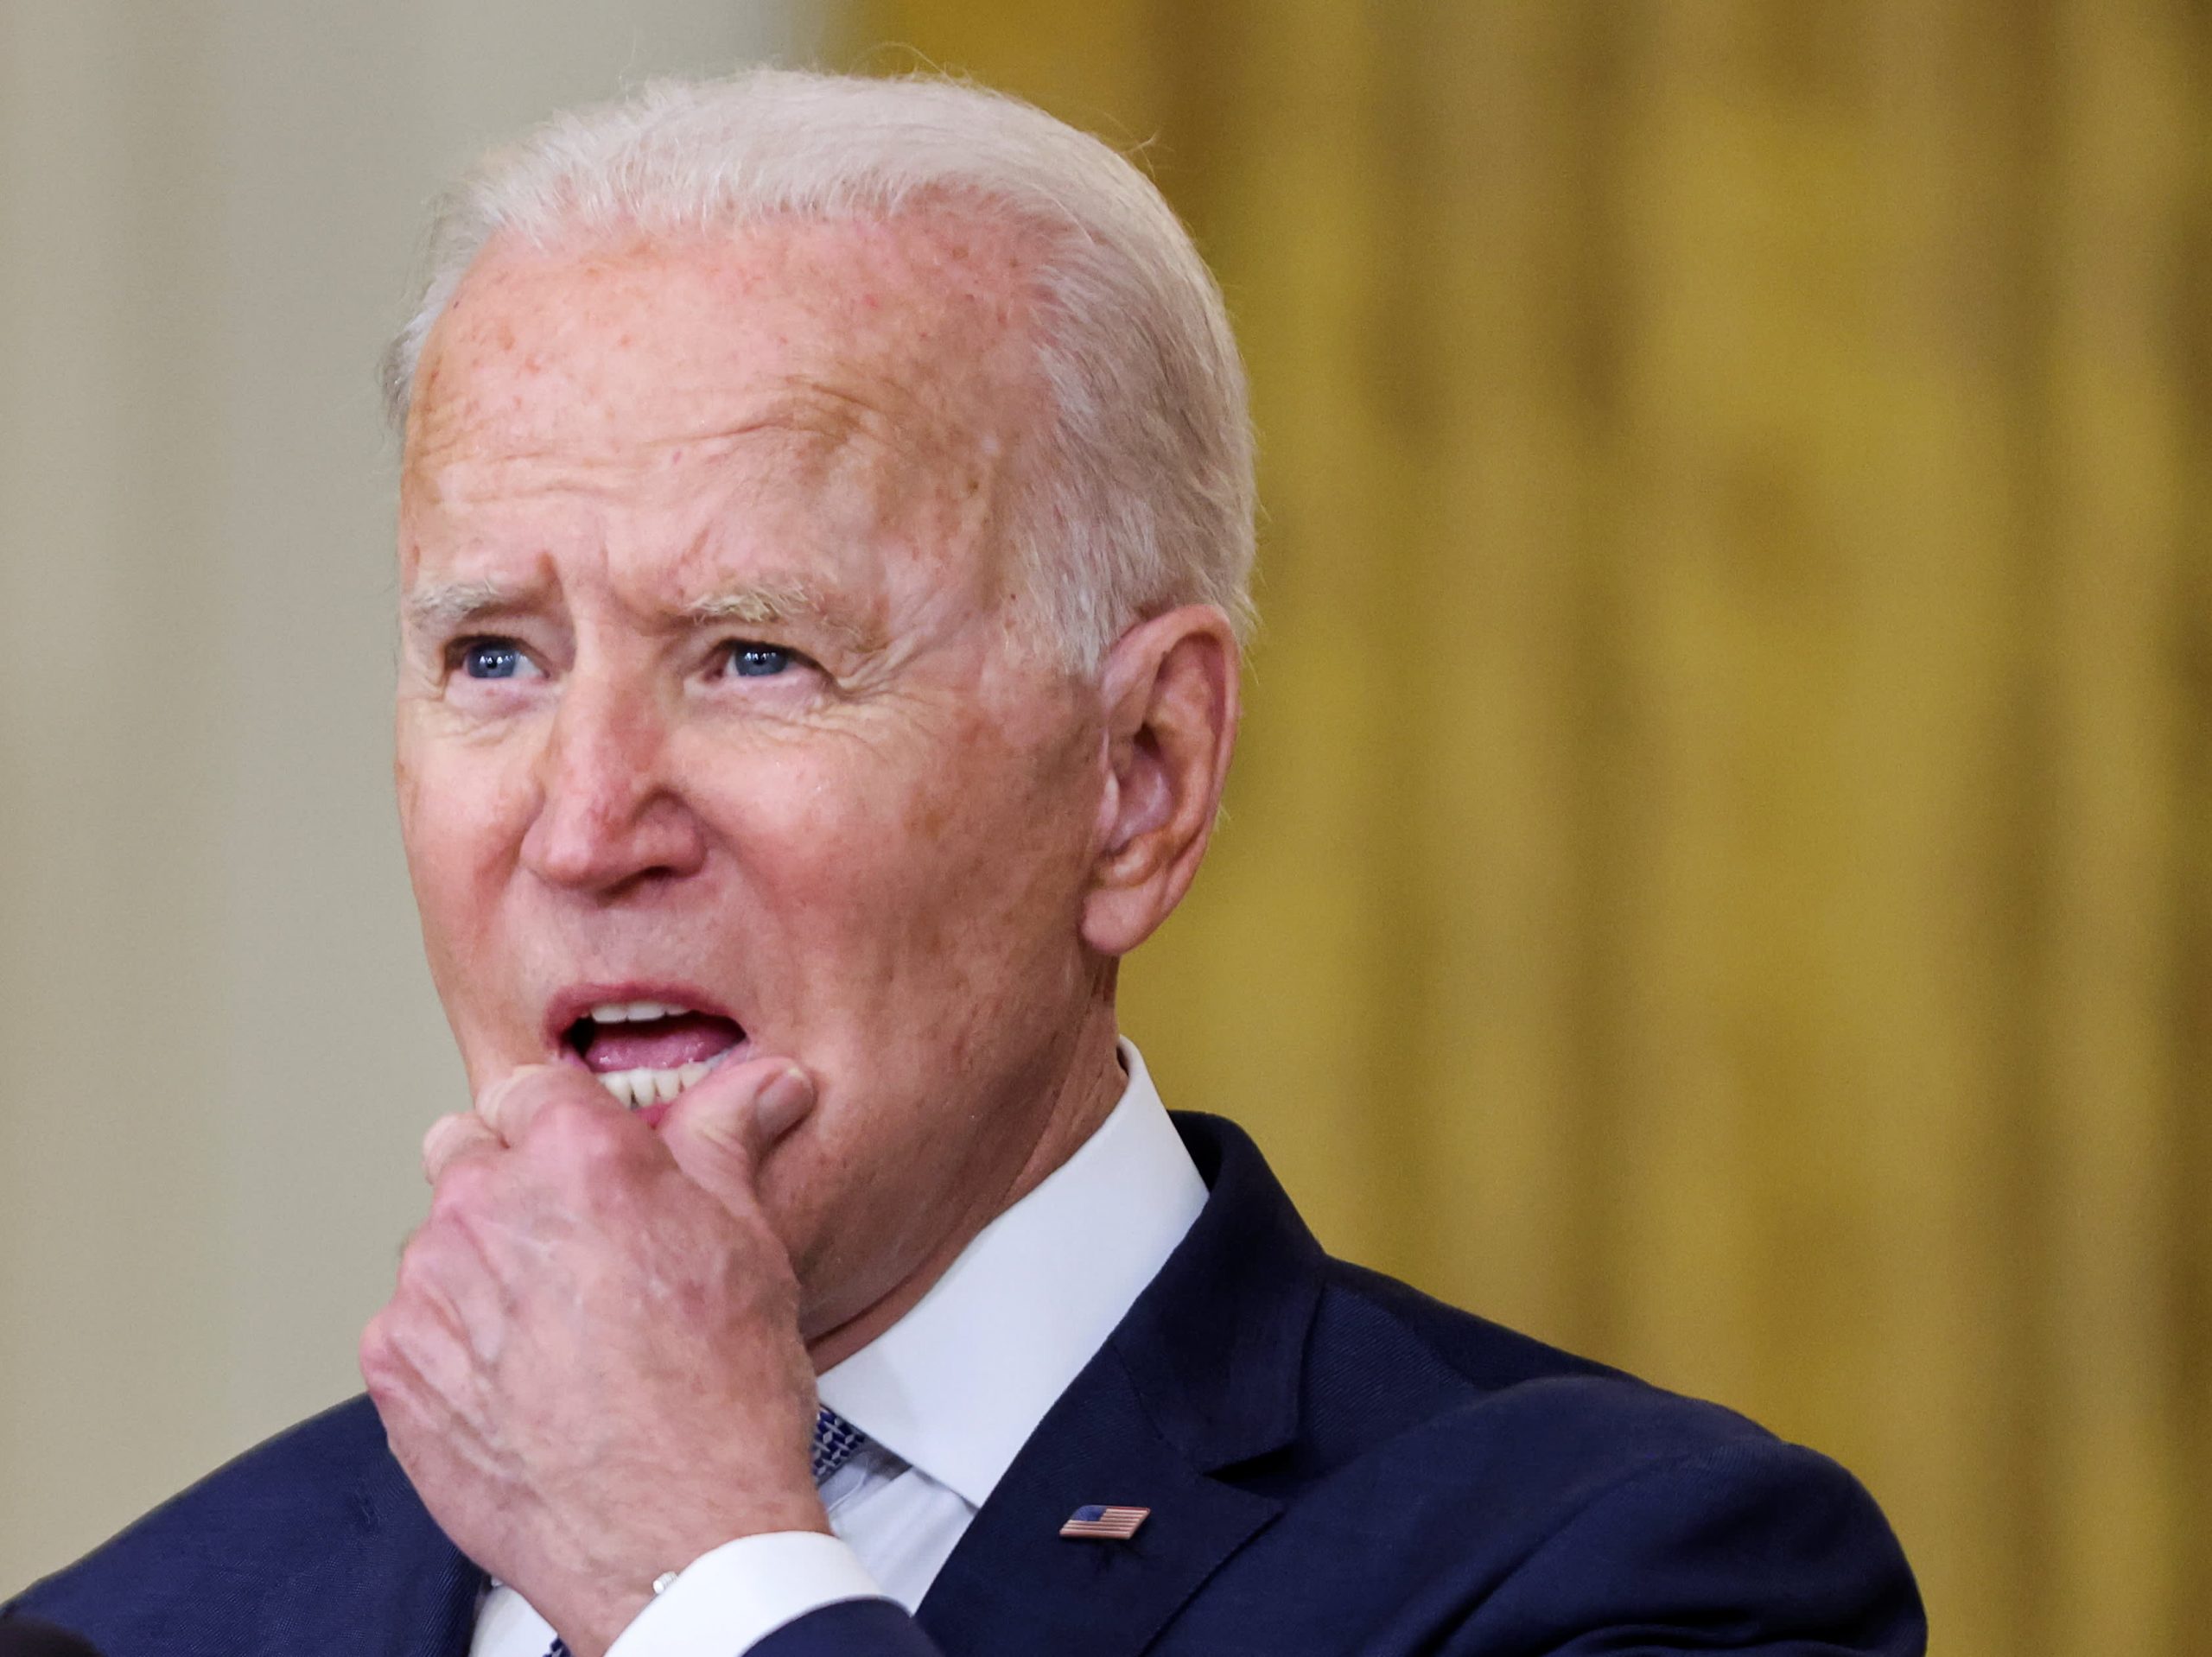 Biden hablará sobre el rápido colapso de Afganistán en un discurso en la Casa Blanca